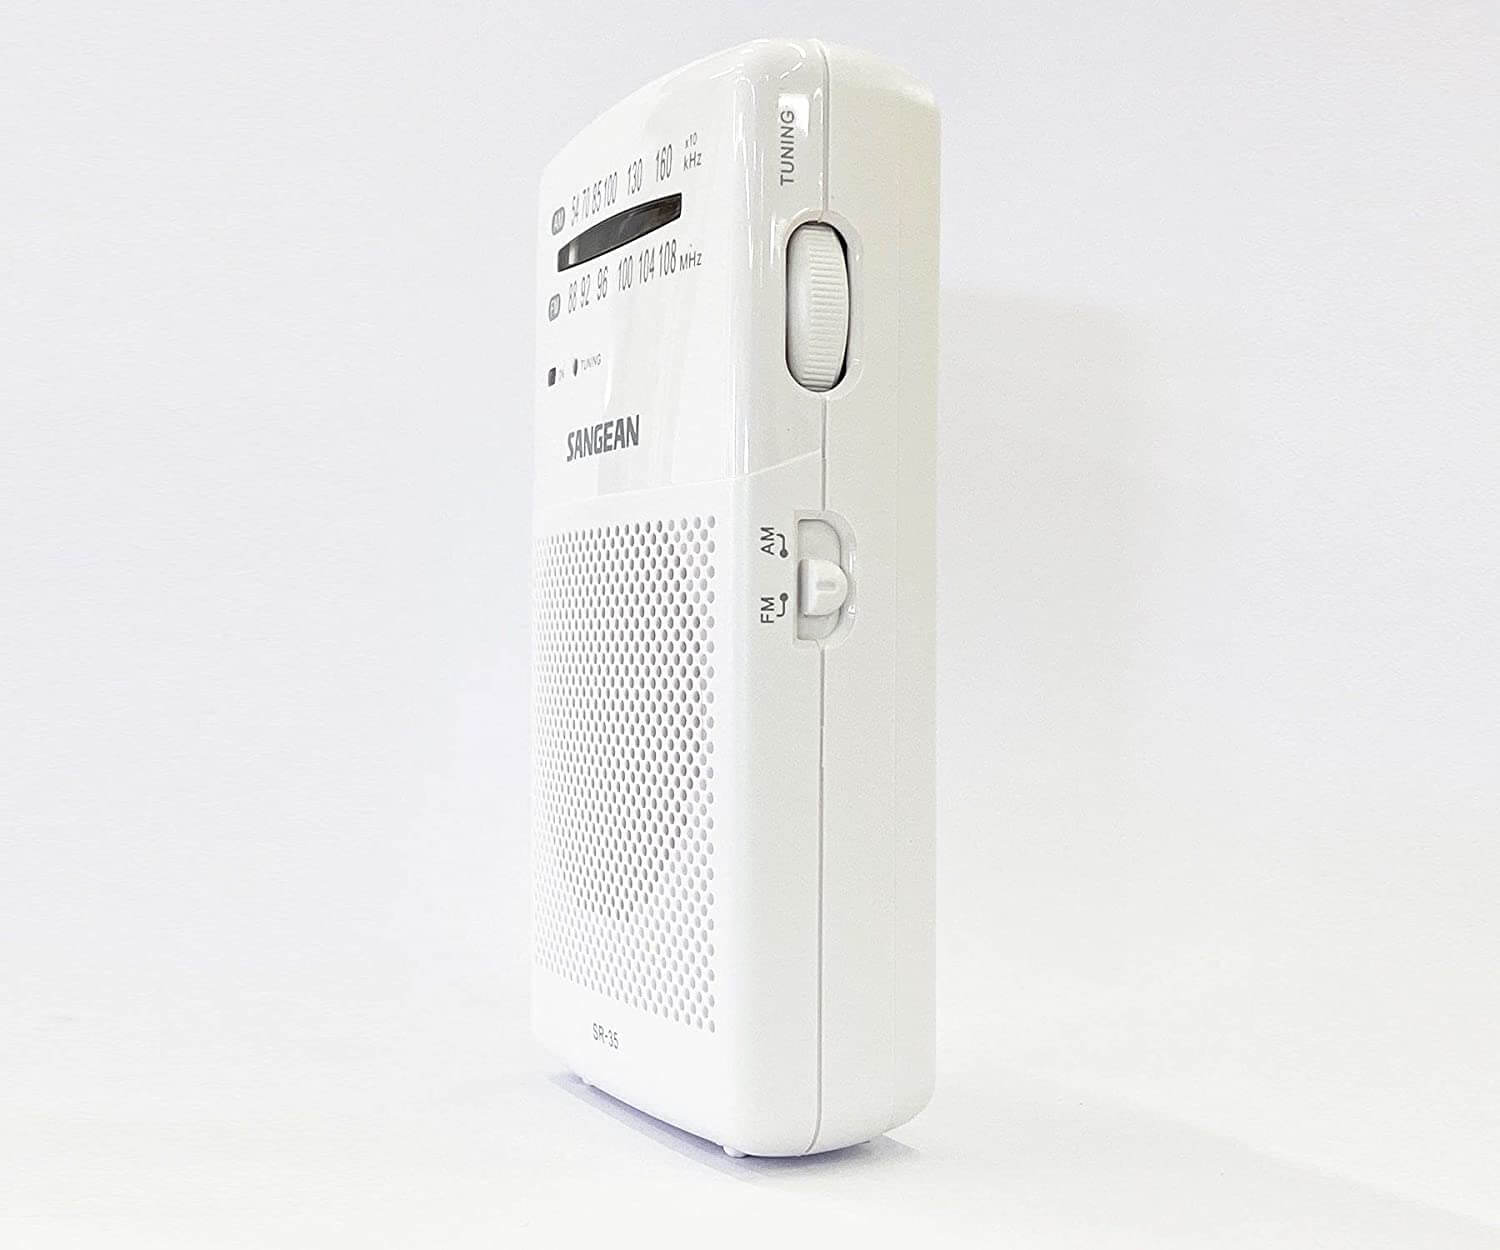 la compañera radiofónica compacta y potente perfecta: Sangean Pocket 100